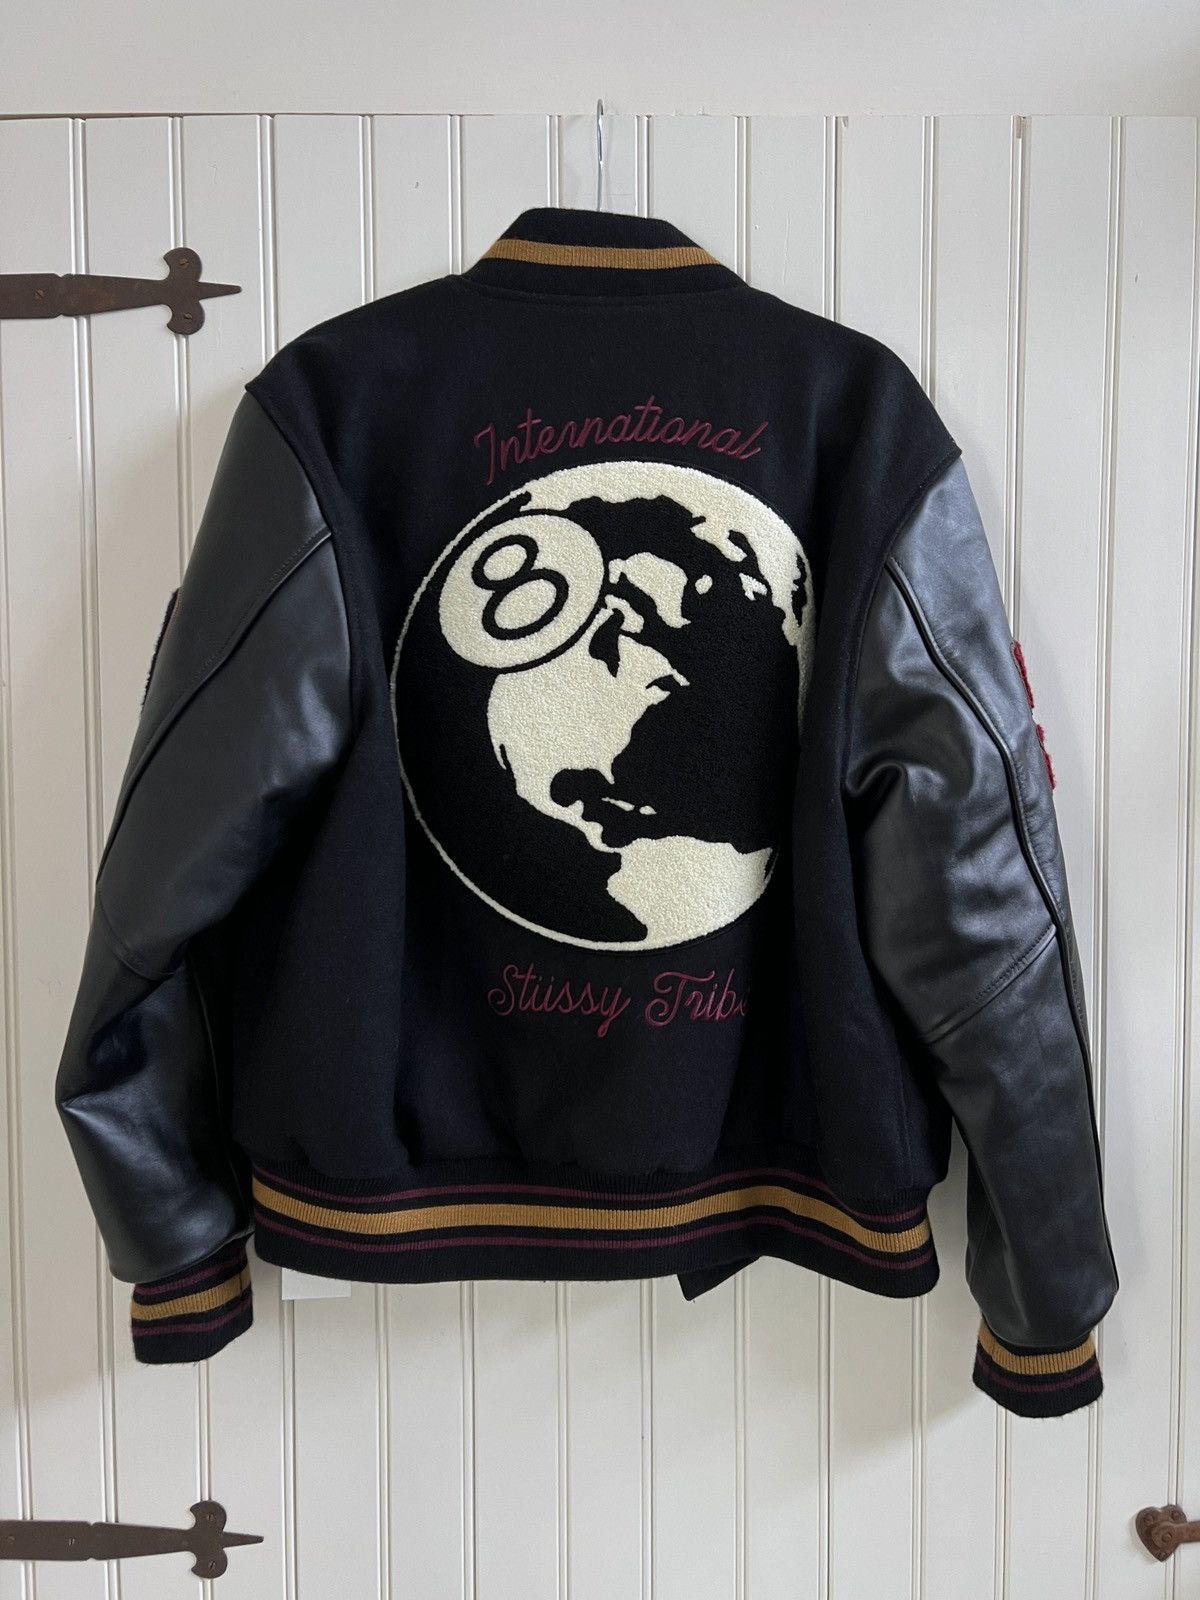 Stussy Stussy 40th Anniversary Varsity Jacket (M) | Grailed